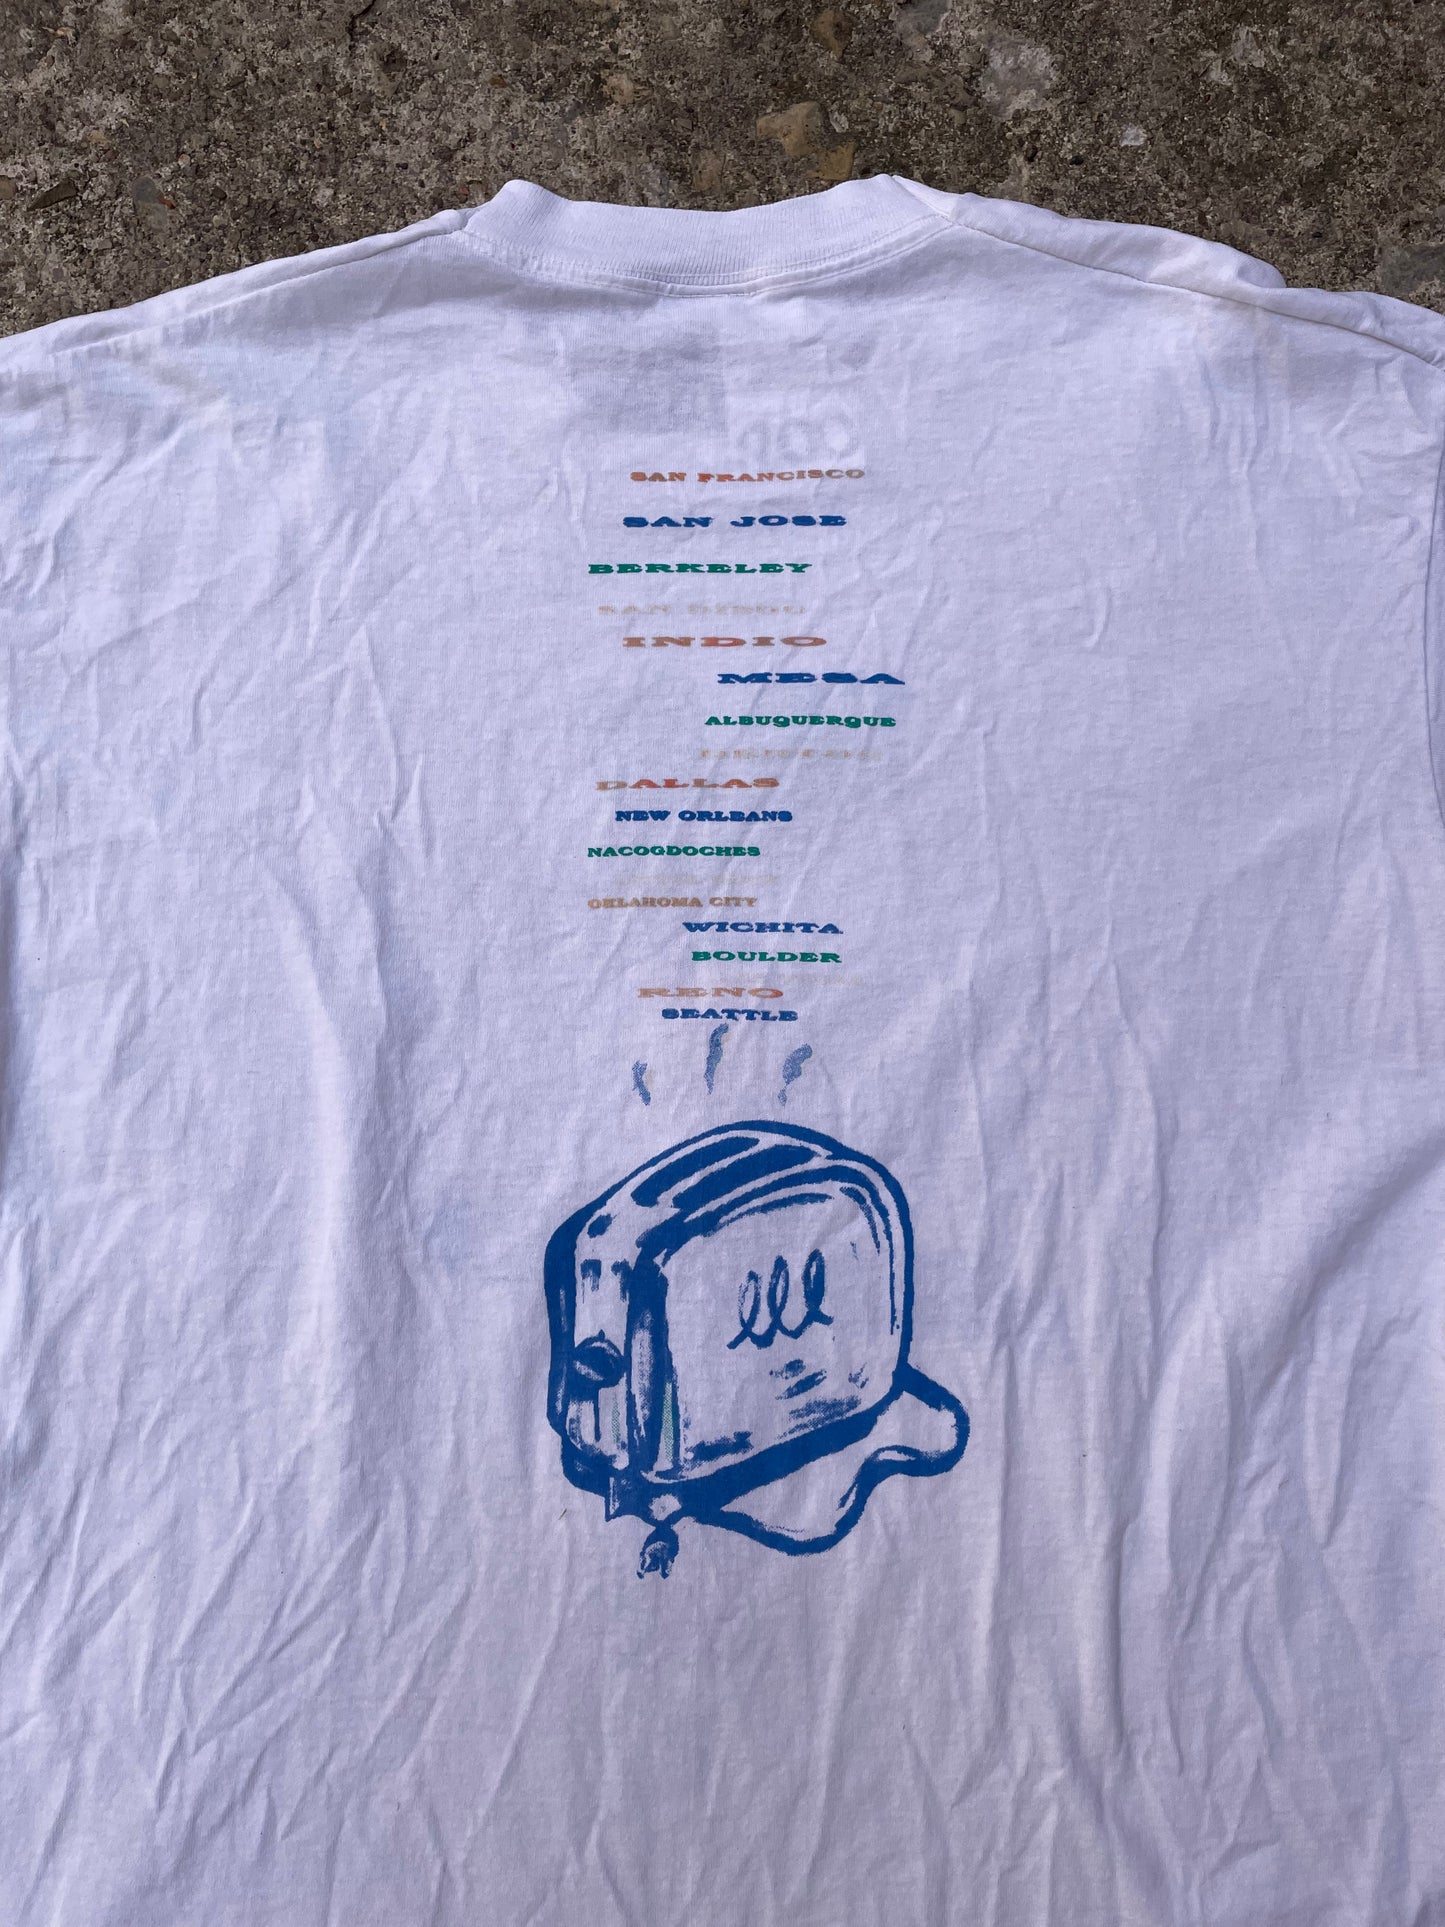 1994 Pearl Jam Freak Shallow Puppet Tour Band T-Shirt - XL